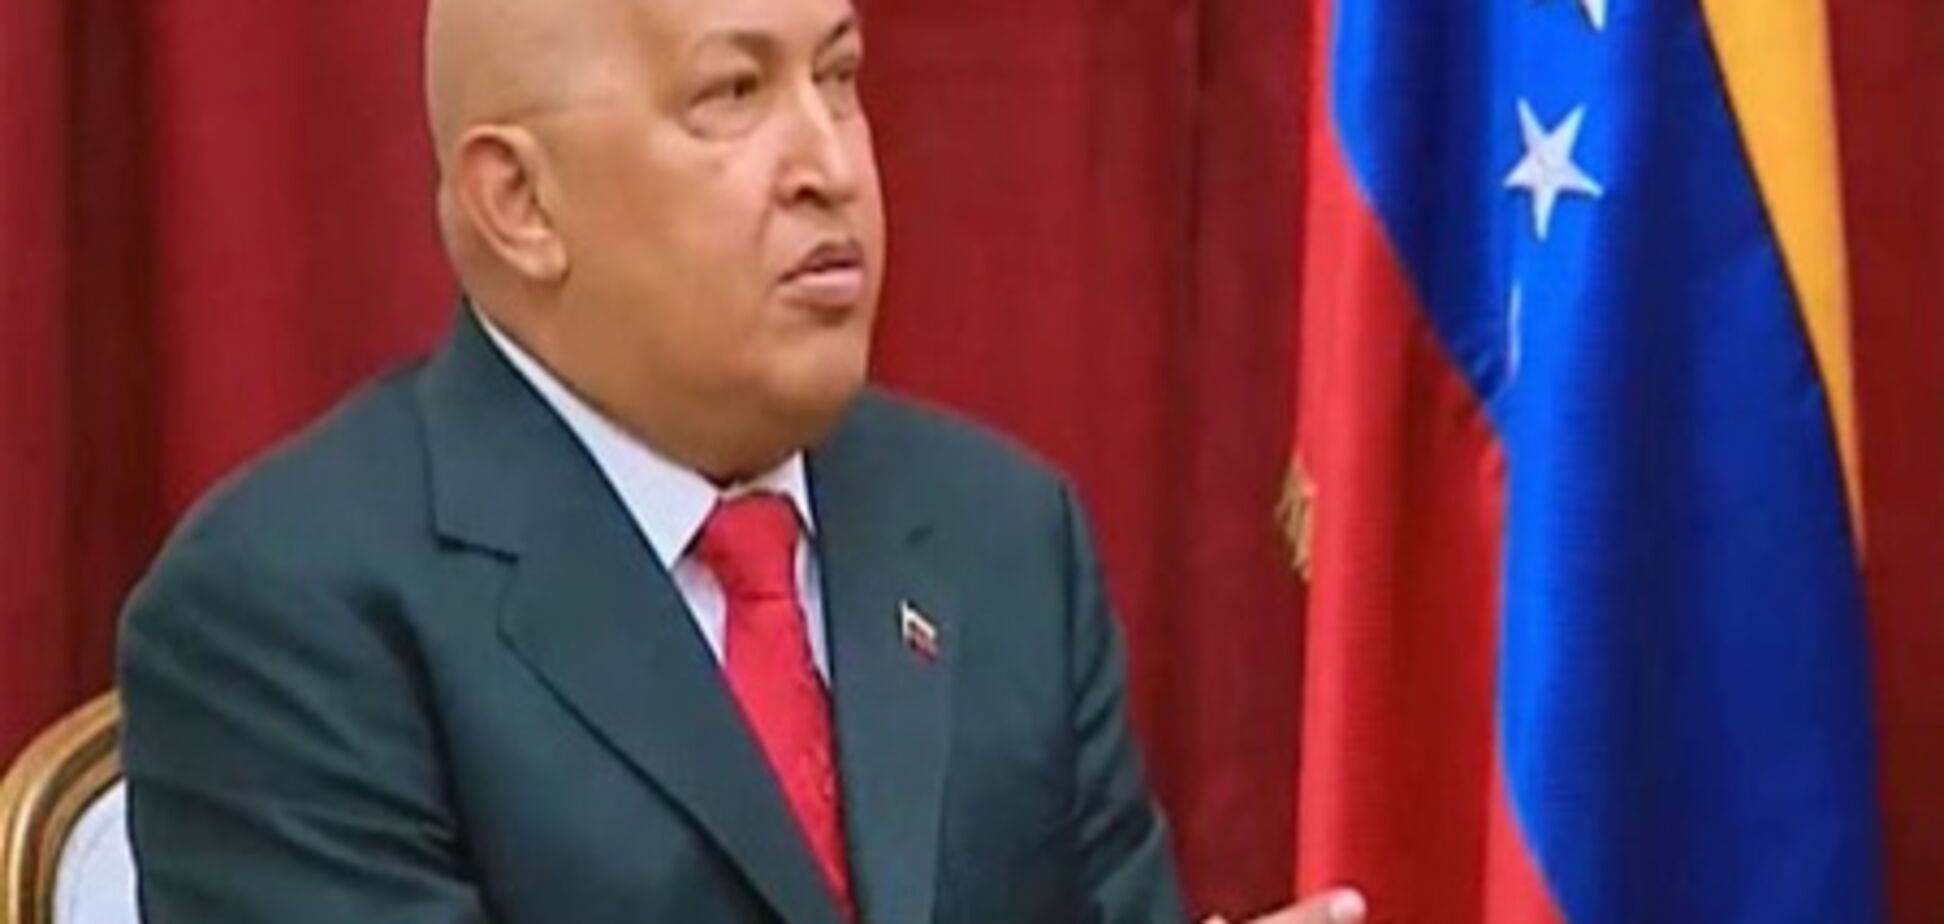 Чавес останется президентом и без инаугурации - генпрокурор